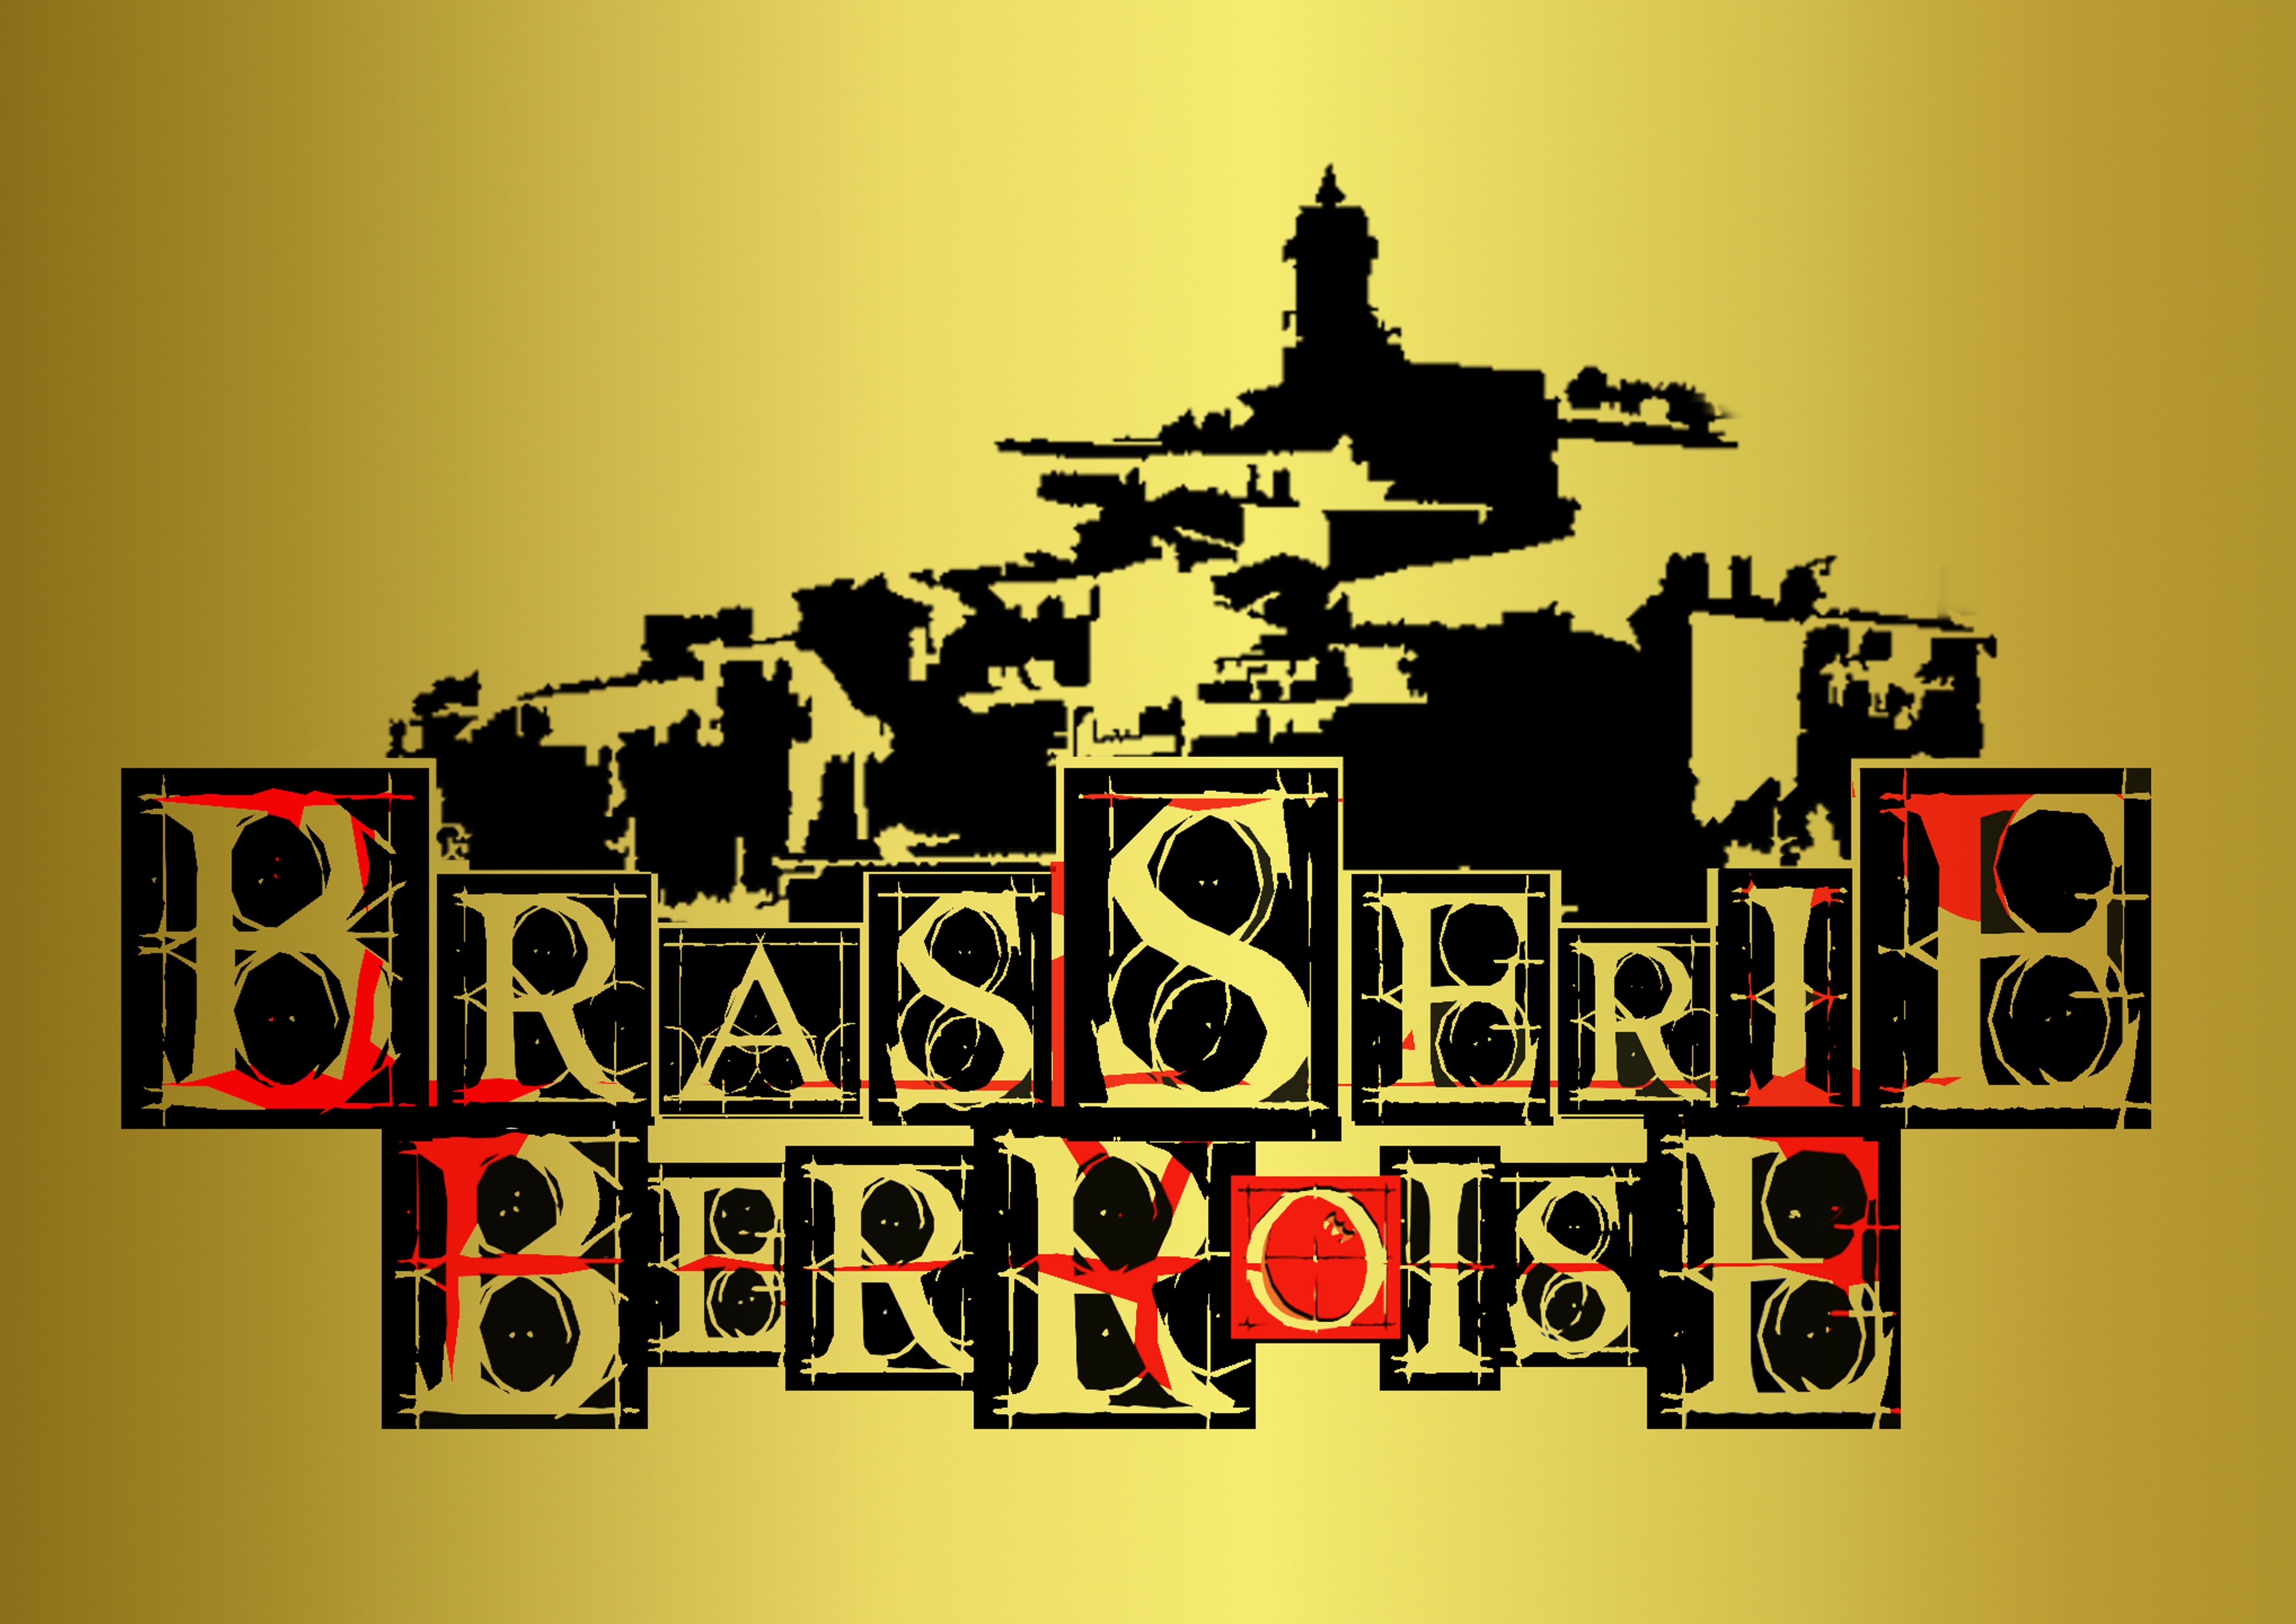 La Brasserie Berroise